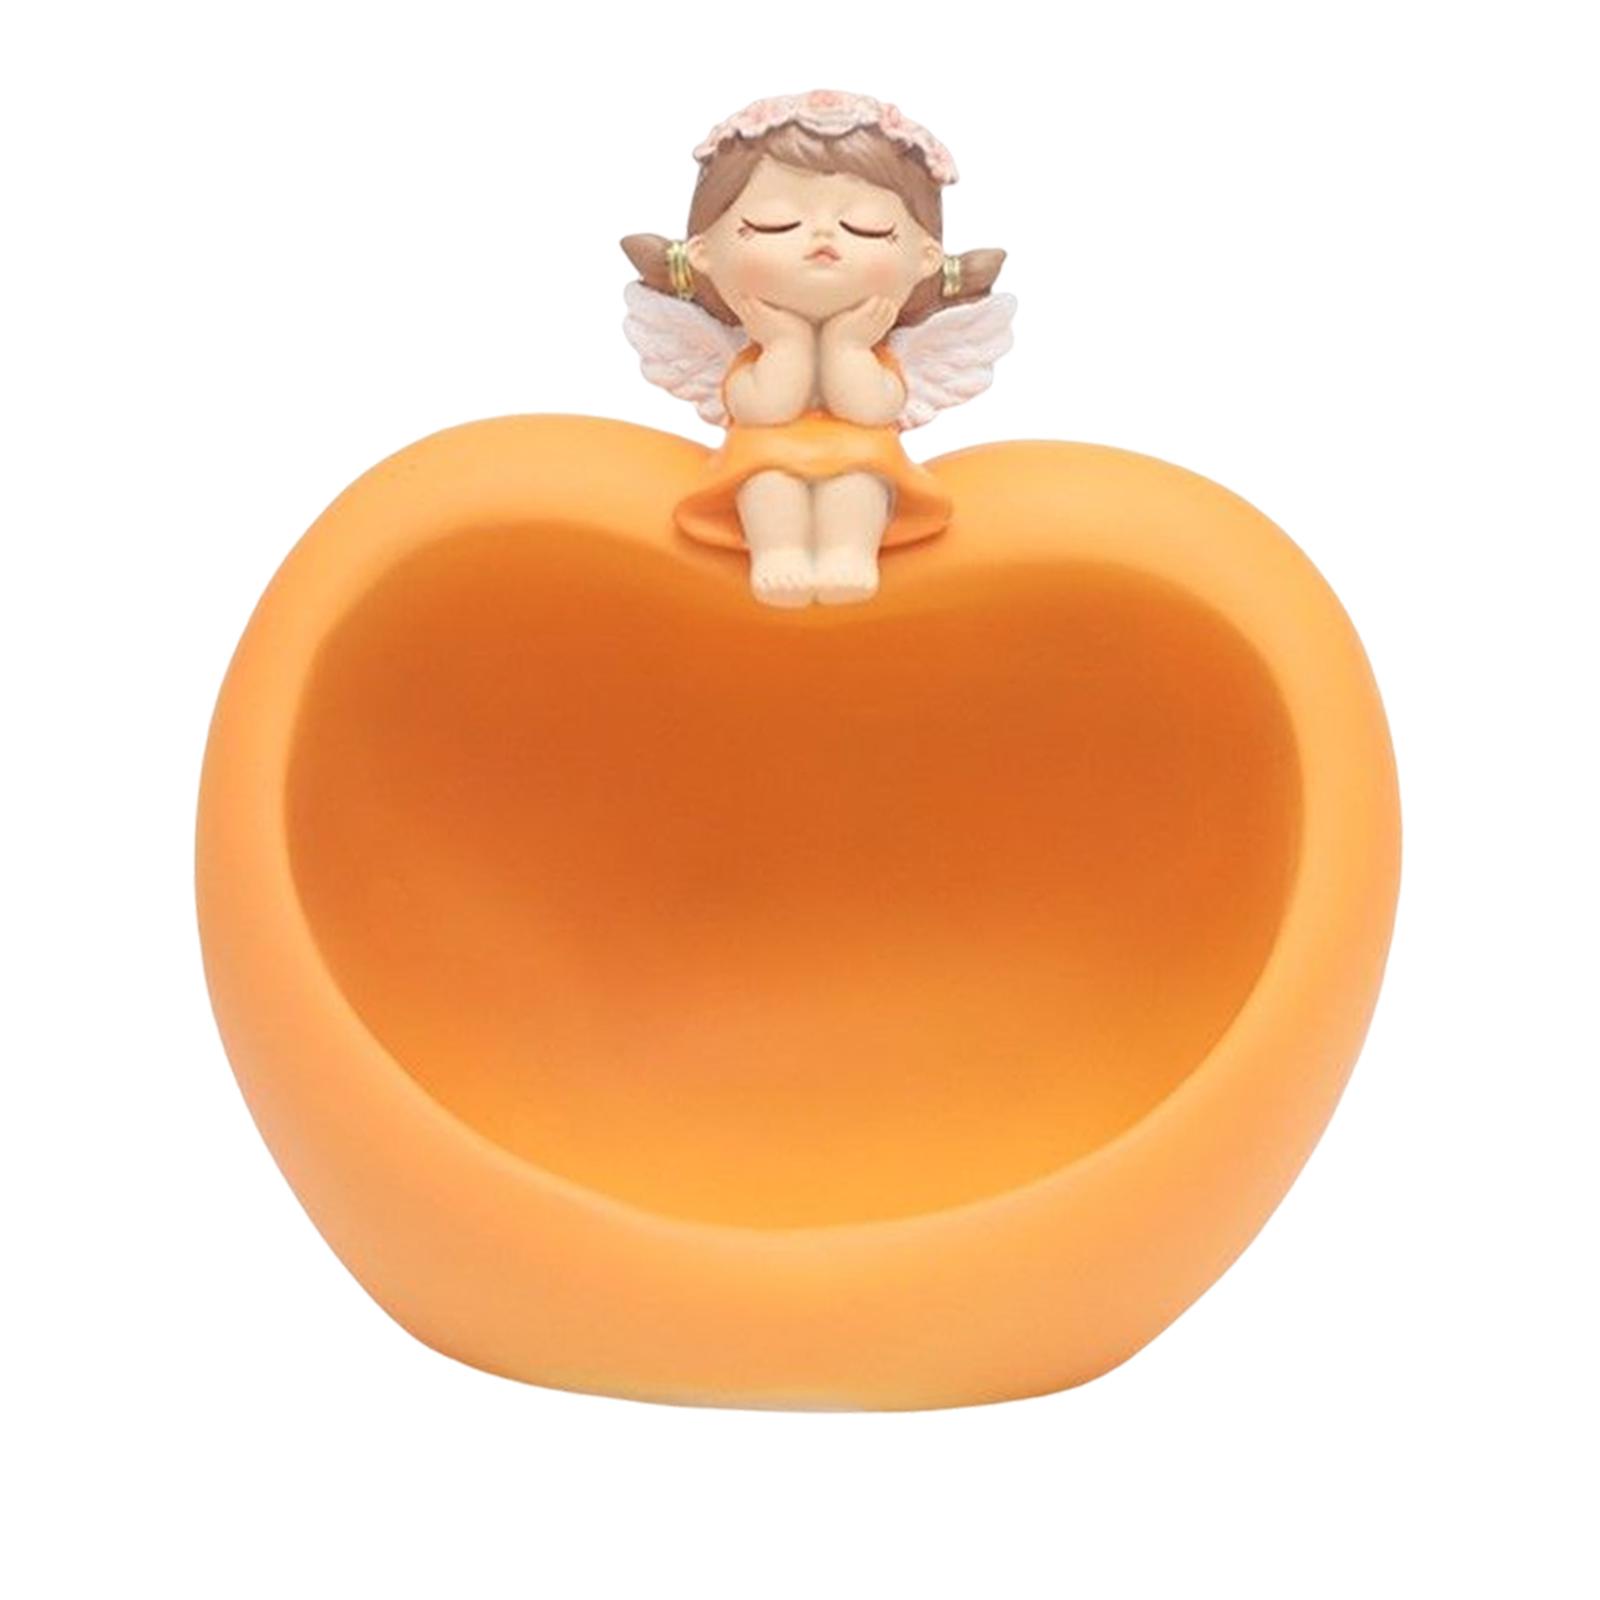 Table Resin Little Girl Statue Phone Keys Bowl Decor Orange